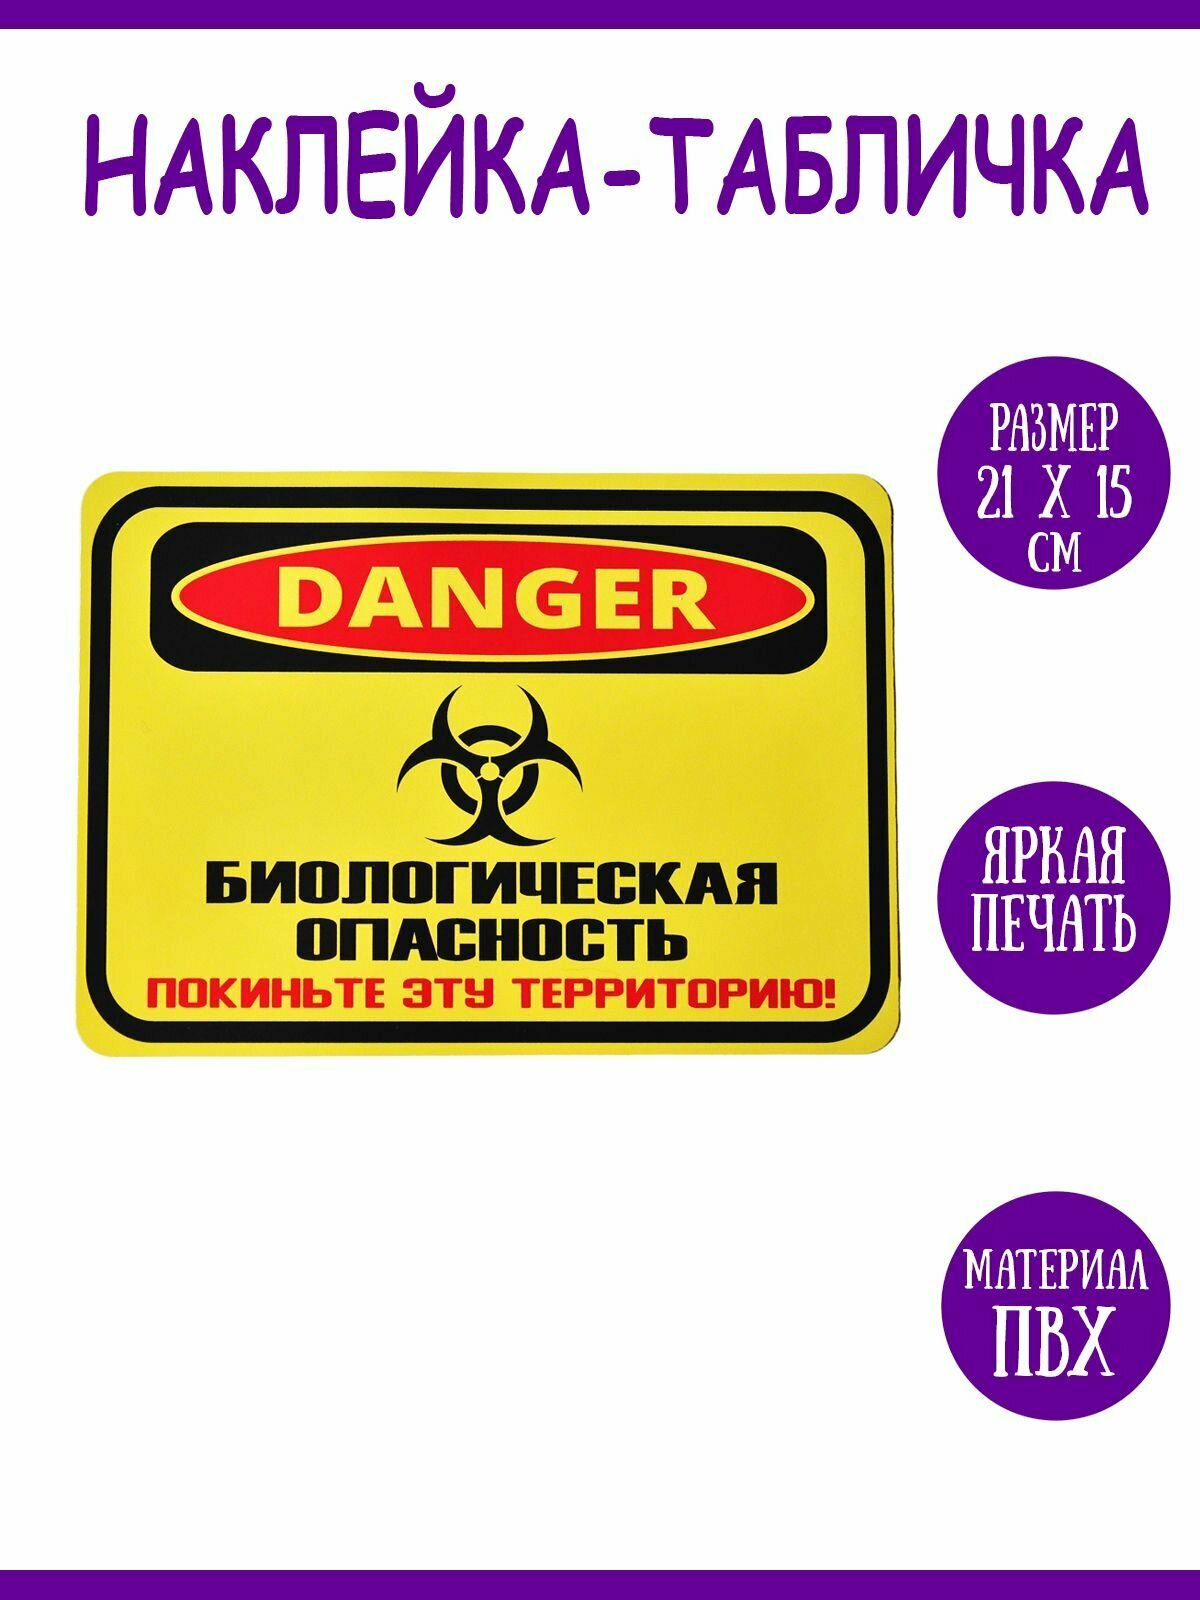 Интерьерная наклейка "Danger! Биологическая опасность", 21х15 см